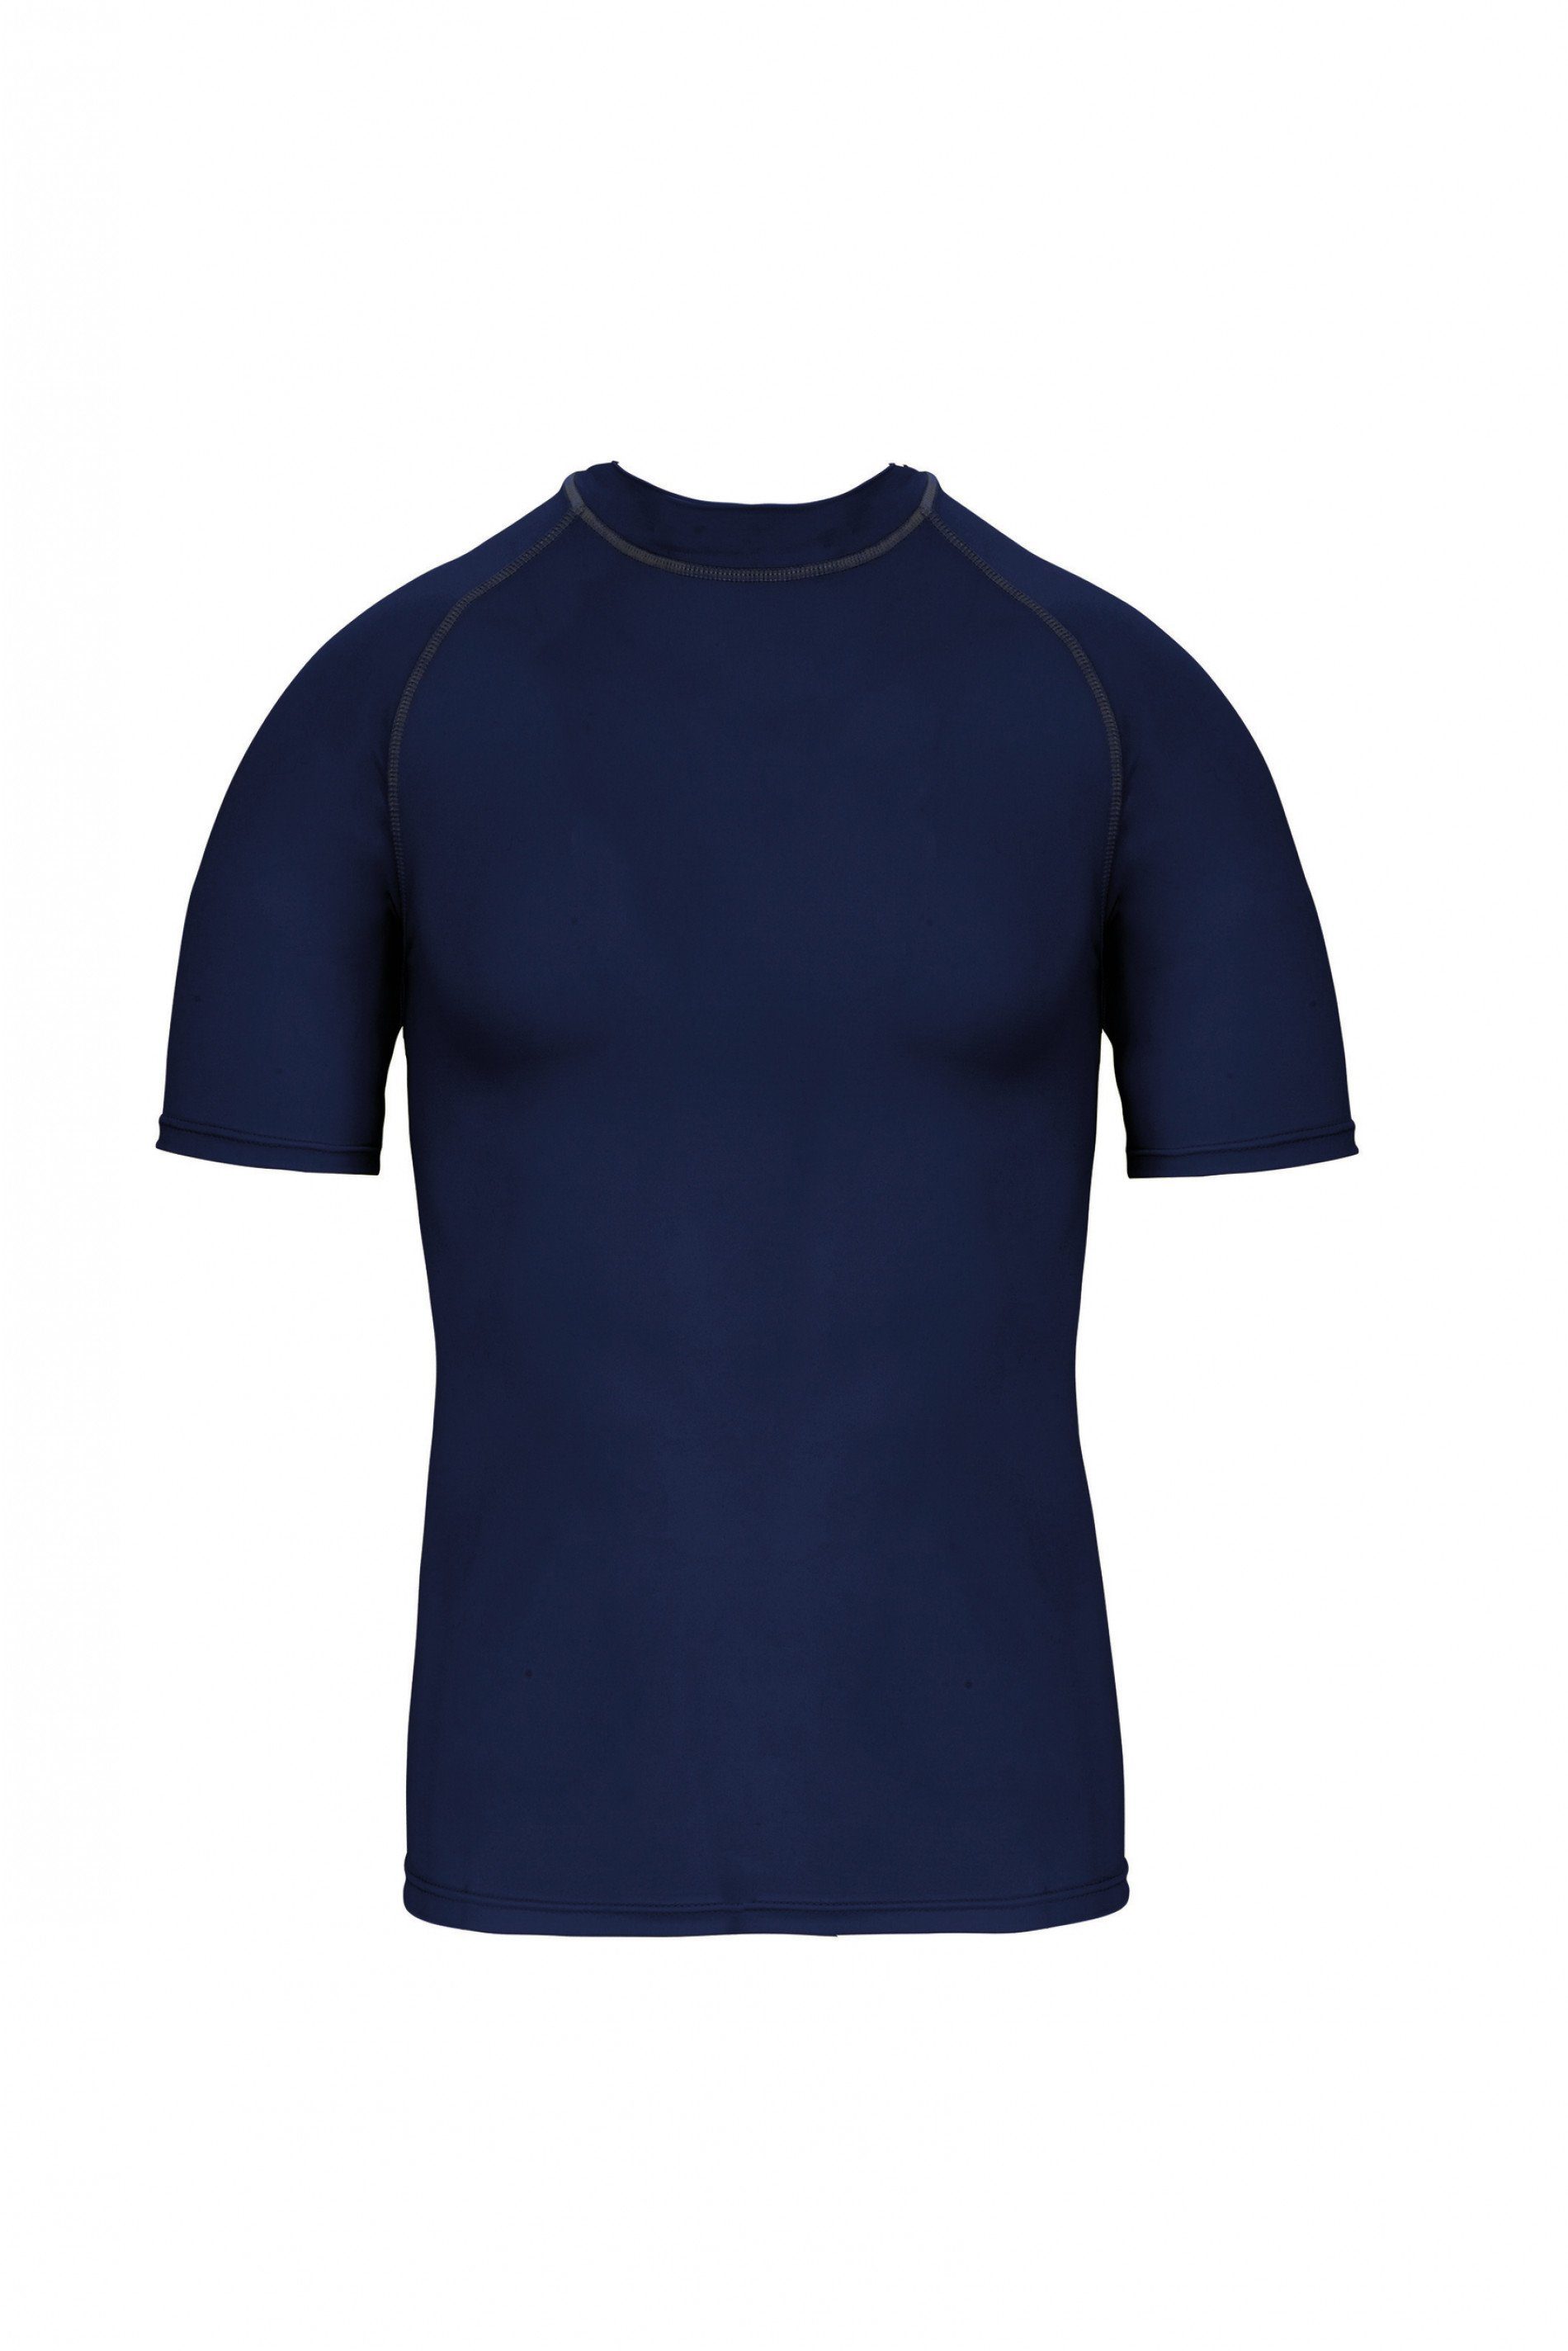 coole-fun-t-shirts Strandshirt Bade T-Shirt zum Schwimmen Kinder Surfshirt Jumngen Mädchen UV 40+ blau, dunkelblau und neongelb Gr. 6 7 8 9 10 11 12 13 14 Jahre